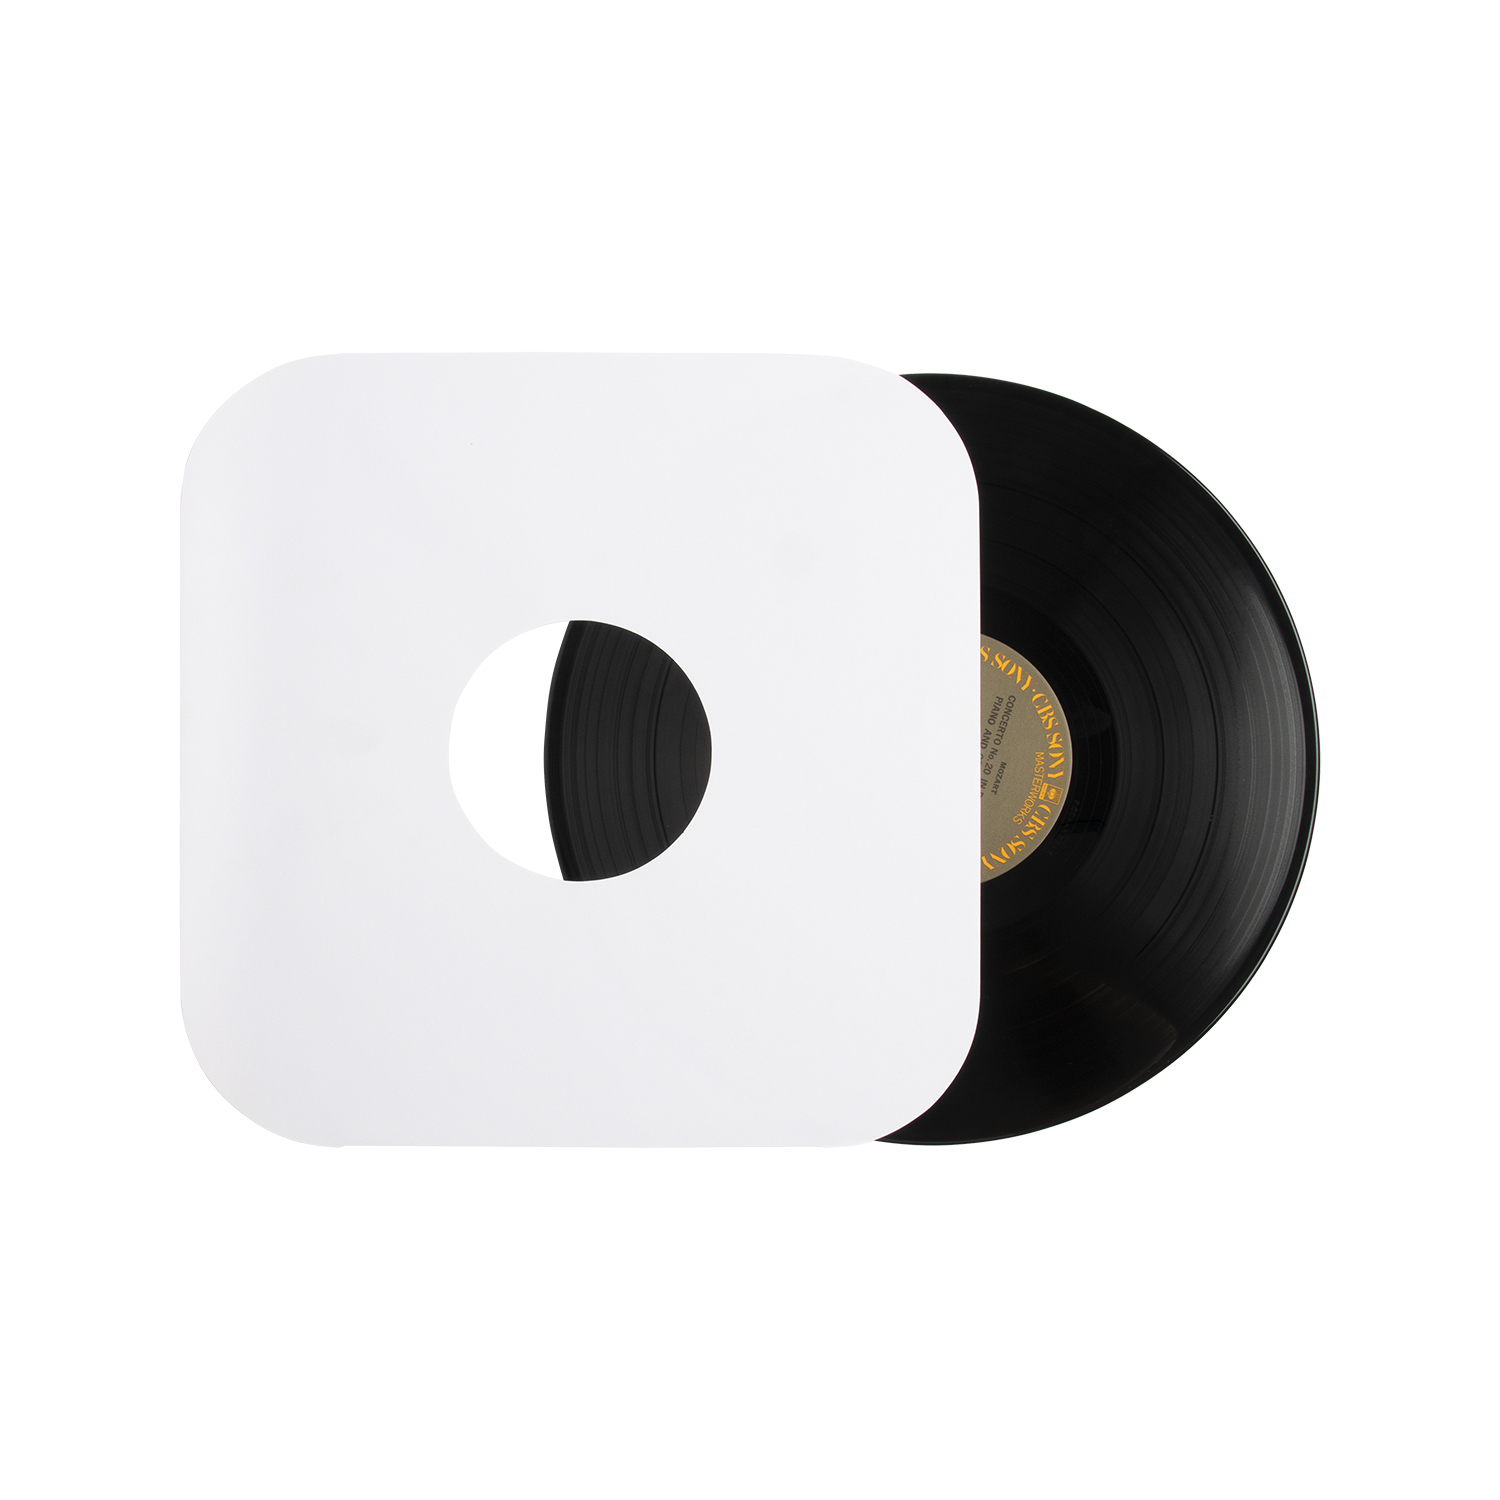 Manicotti interni LP in carta bianca/nera/colorata con angolo rotondo